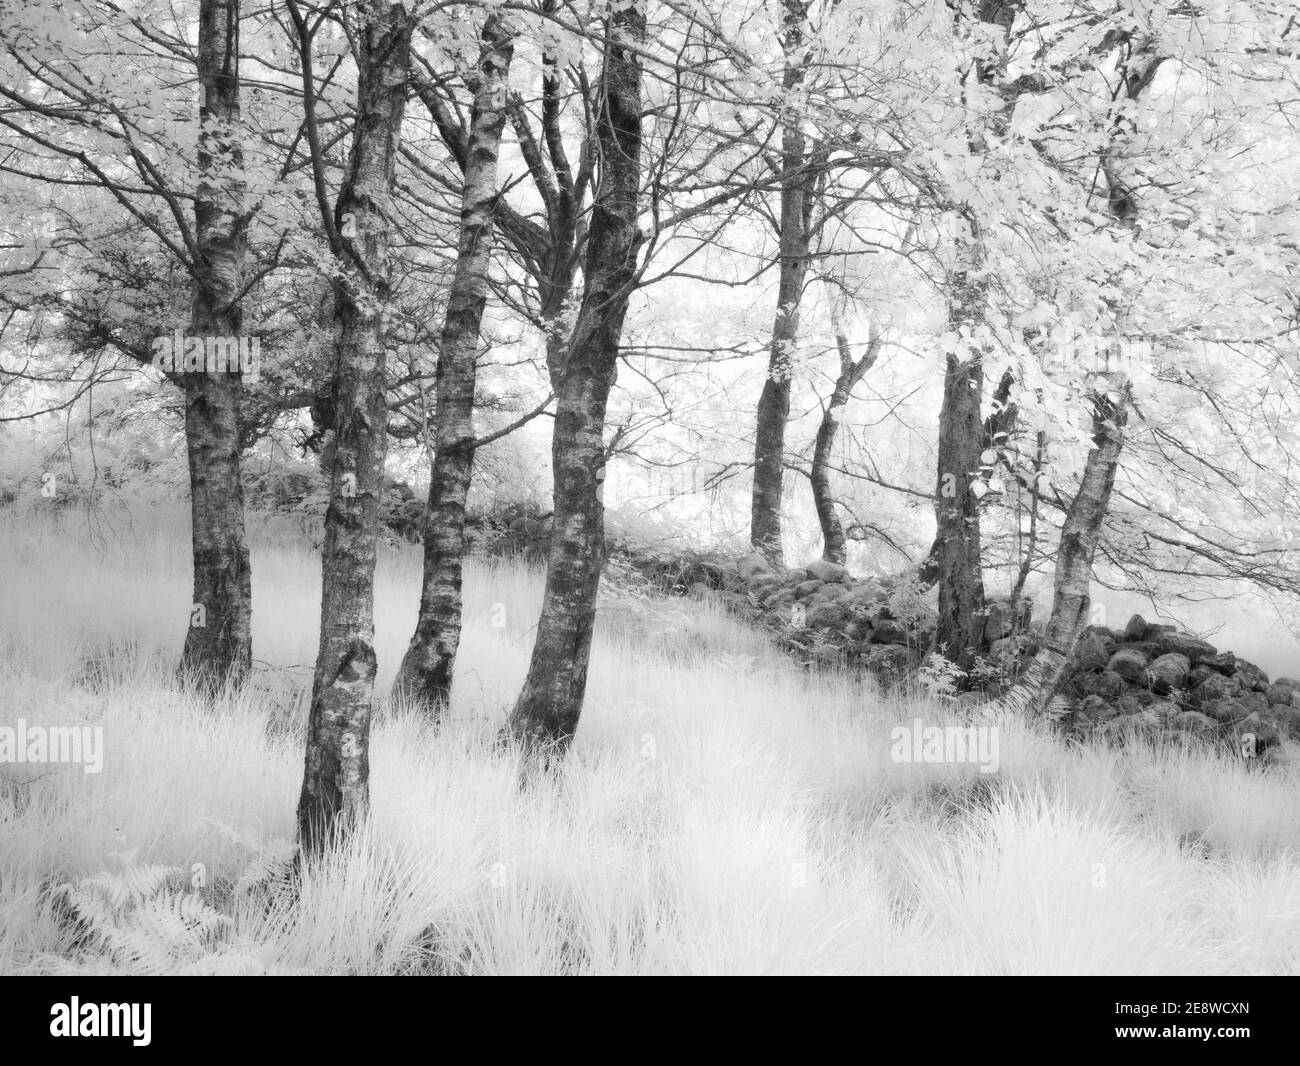 Image infrarouge d'arbres à côté d'un mur de pierre dans une forêt du parc national de Bannau Brycheiniog (Brecon Beacons). Banque D'Images